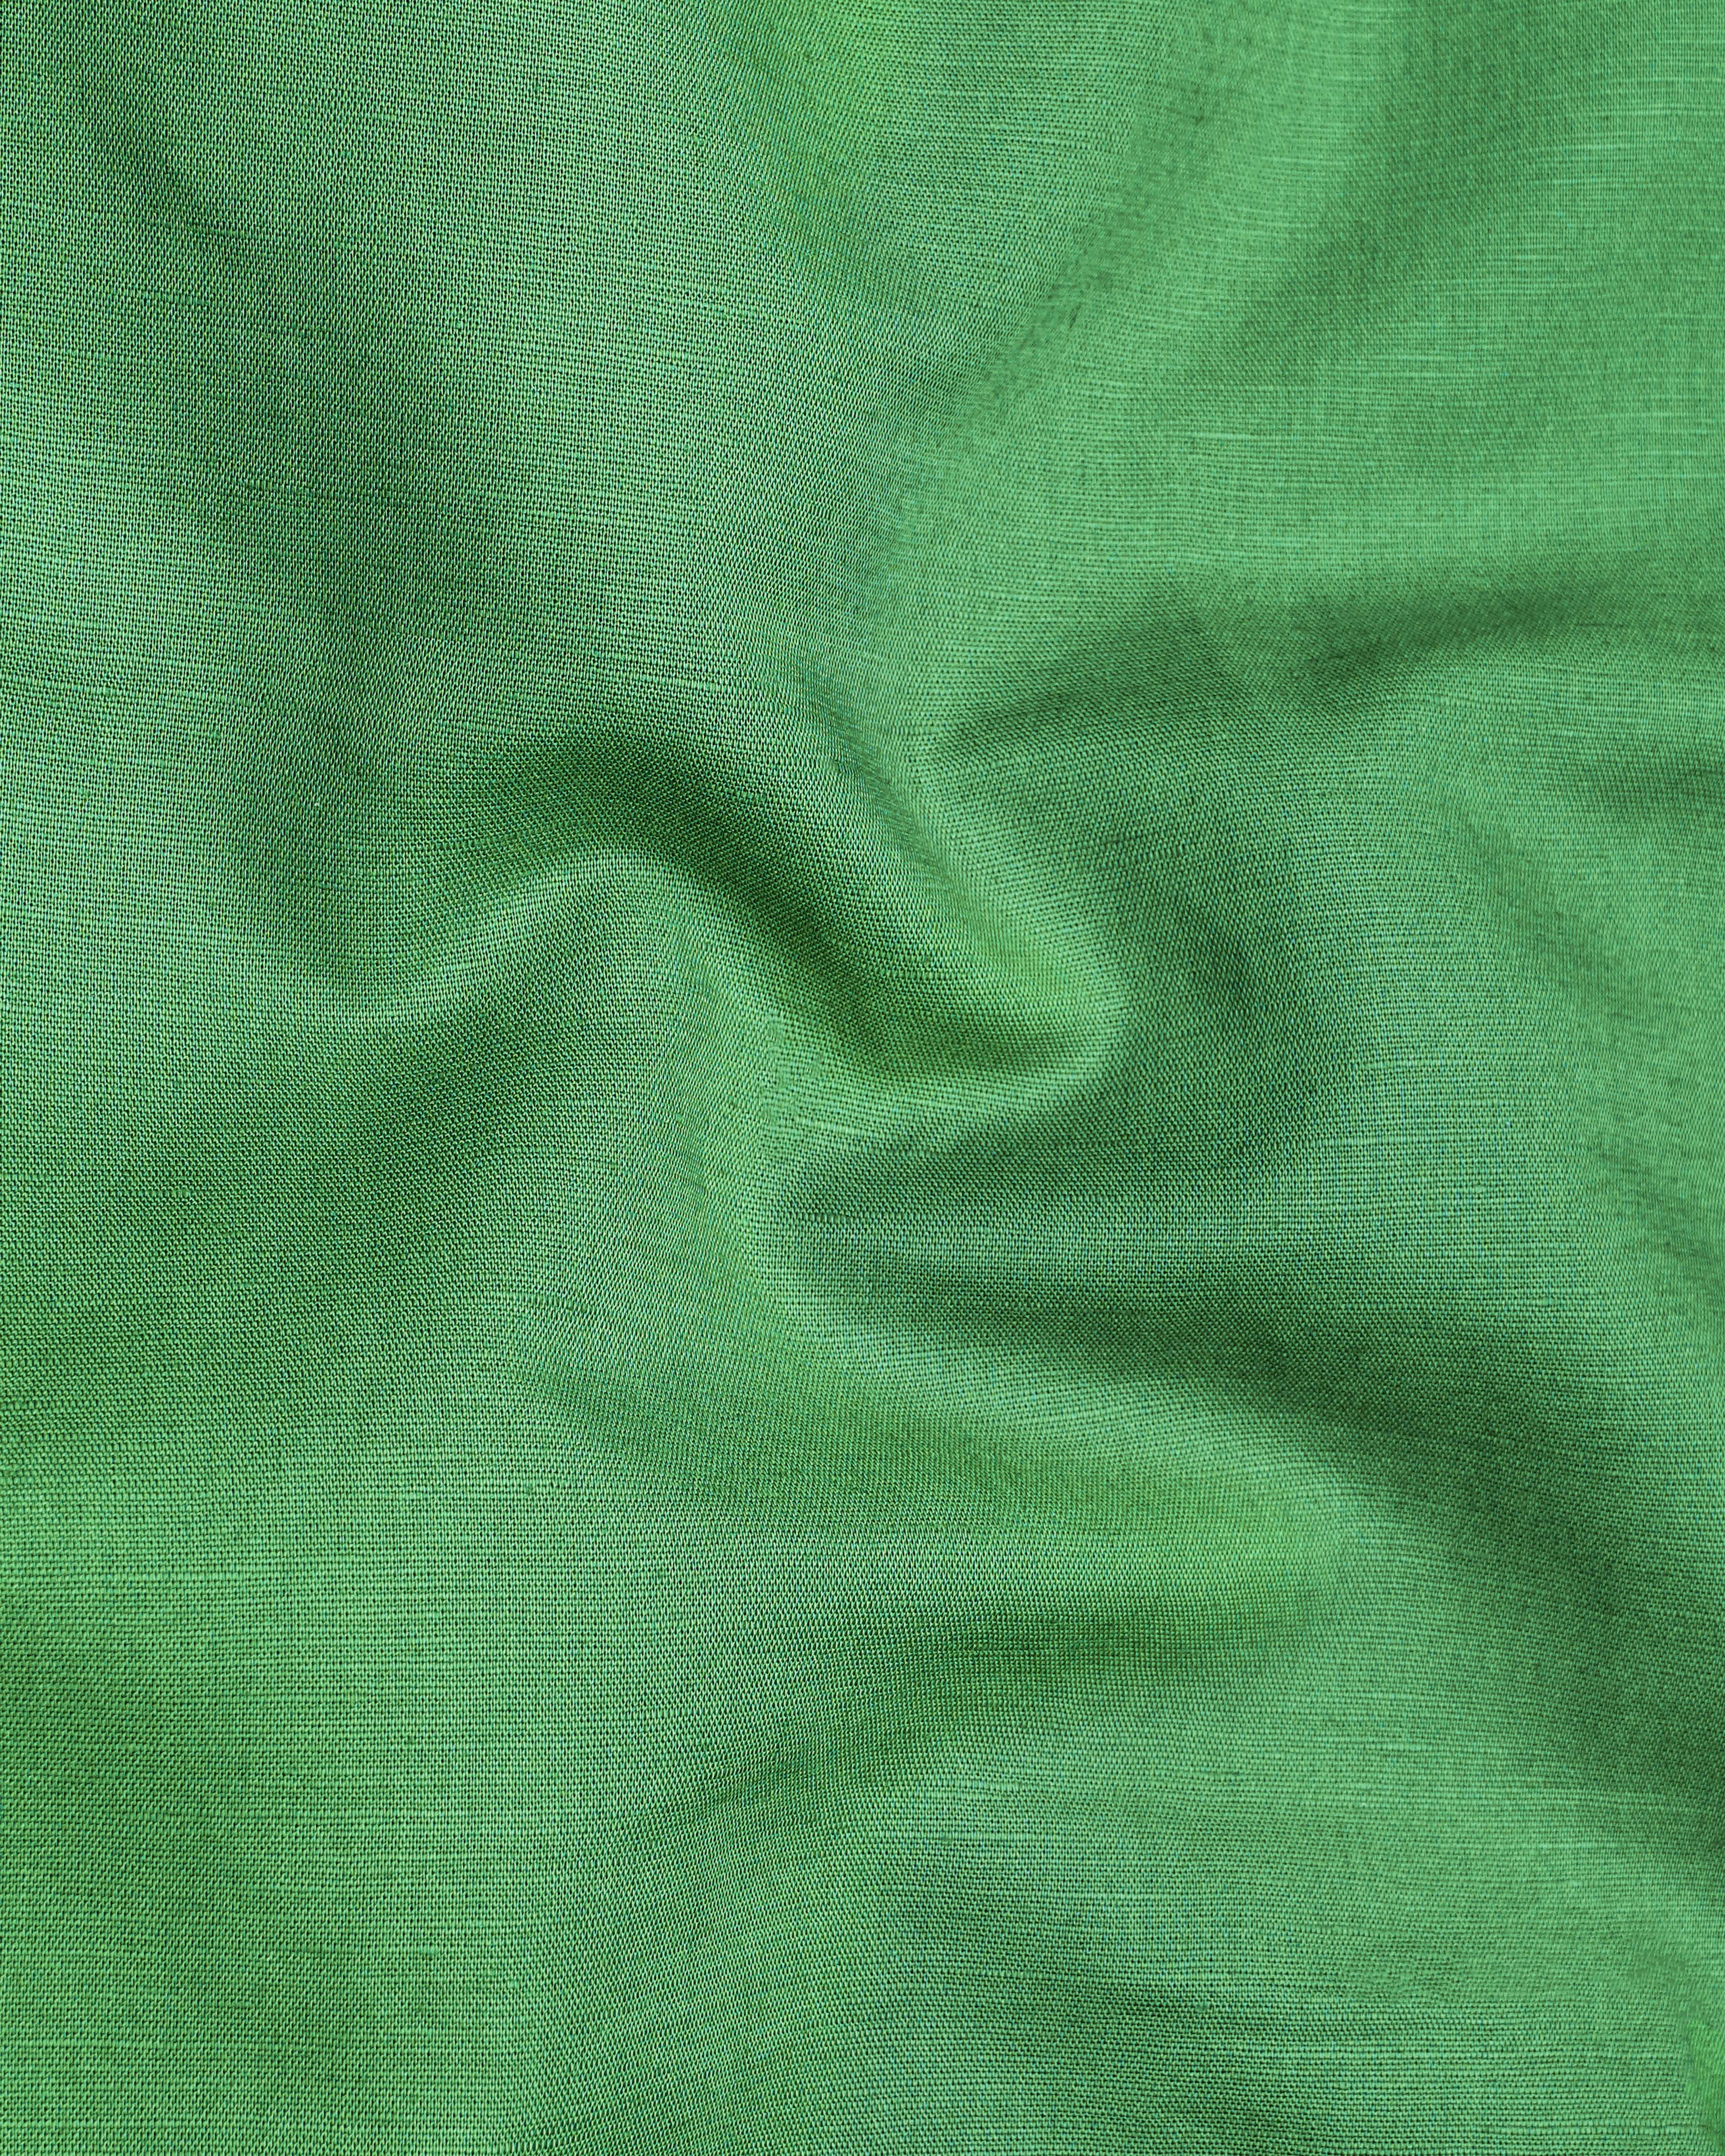 Clover Green Luxurious Linen Shirt 8455-BLK-38,8455-BLK-H-38,8455-BLK-39,8455-BLK-H-39,8455-BLK-40,8455-BLK-H-40,8455-BLK-42,8455-BLK-H-42,8455-BLK-44,8455-BLK-H-44,8455-BLK-46,8455-BLK-H-46,8455-BLK-48,8455-BLK-H-48,8455-BLK-50,8455-BLK-H-50,8455-BLK-52,8455-BLK-H-52